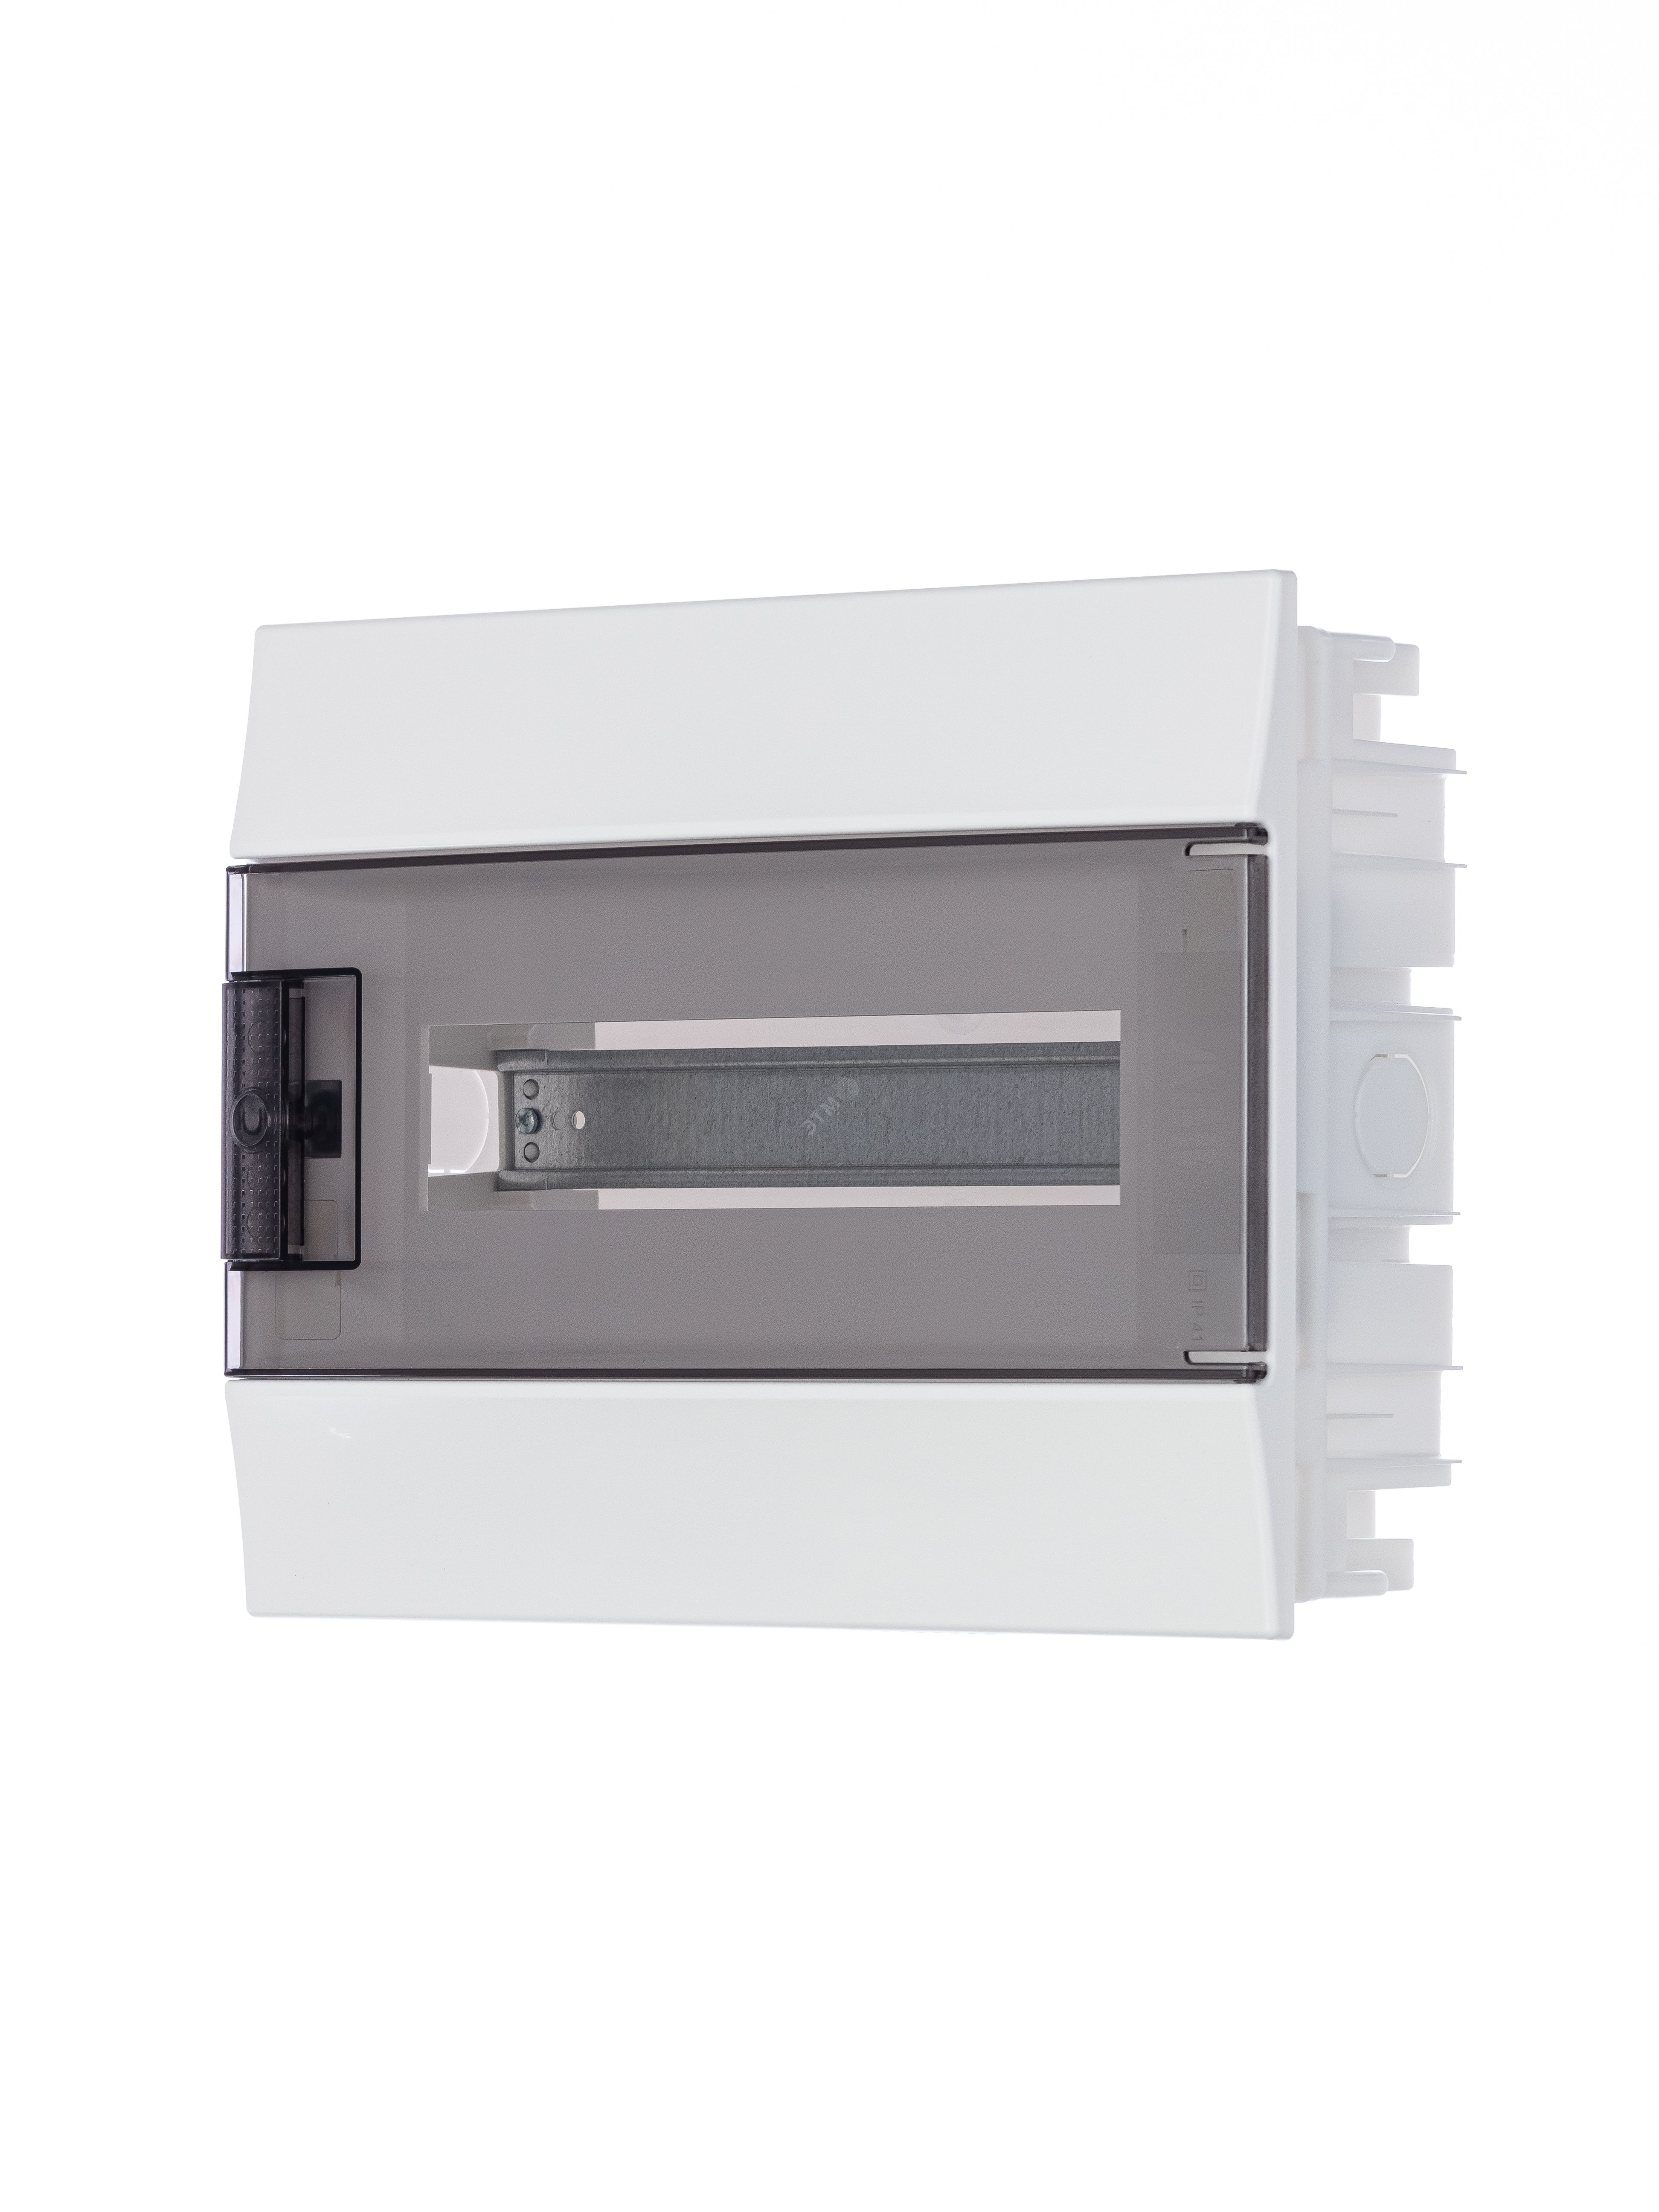 Щит распределительный встраиваемый ЩРв-п-12 пластиковый Mistral41 серая прозрачная дверь с клеммами IP41 (41A12X13B) 1SLM004101A2203 ABB - превью 3